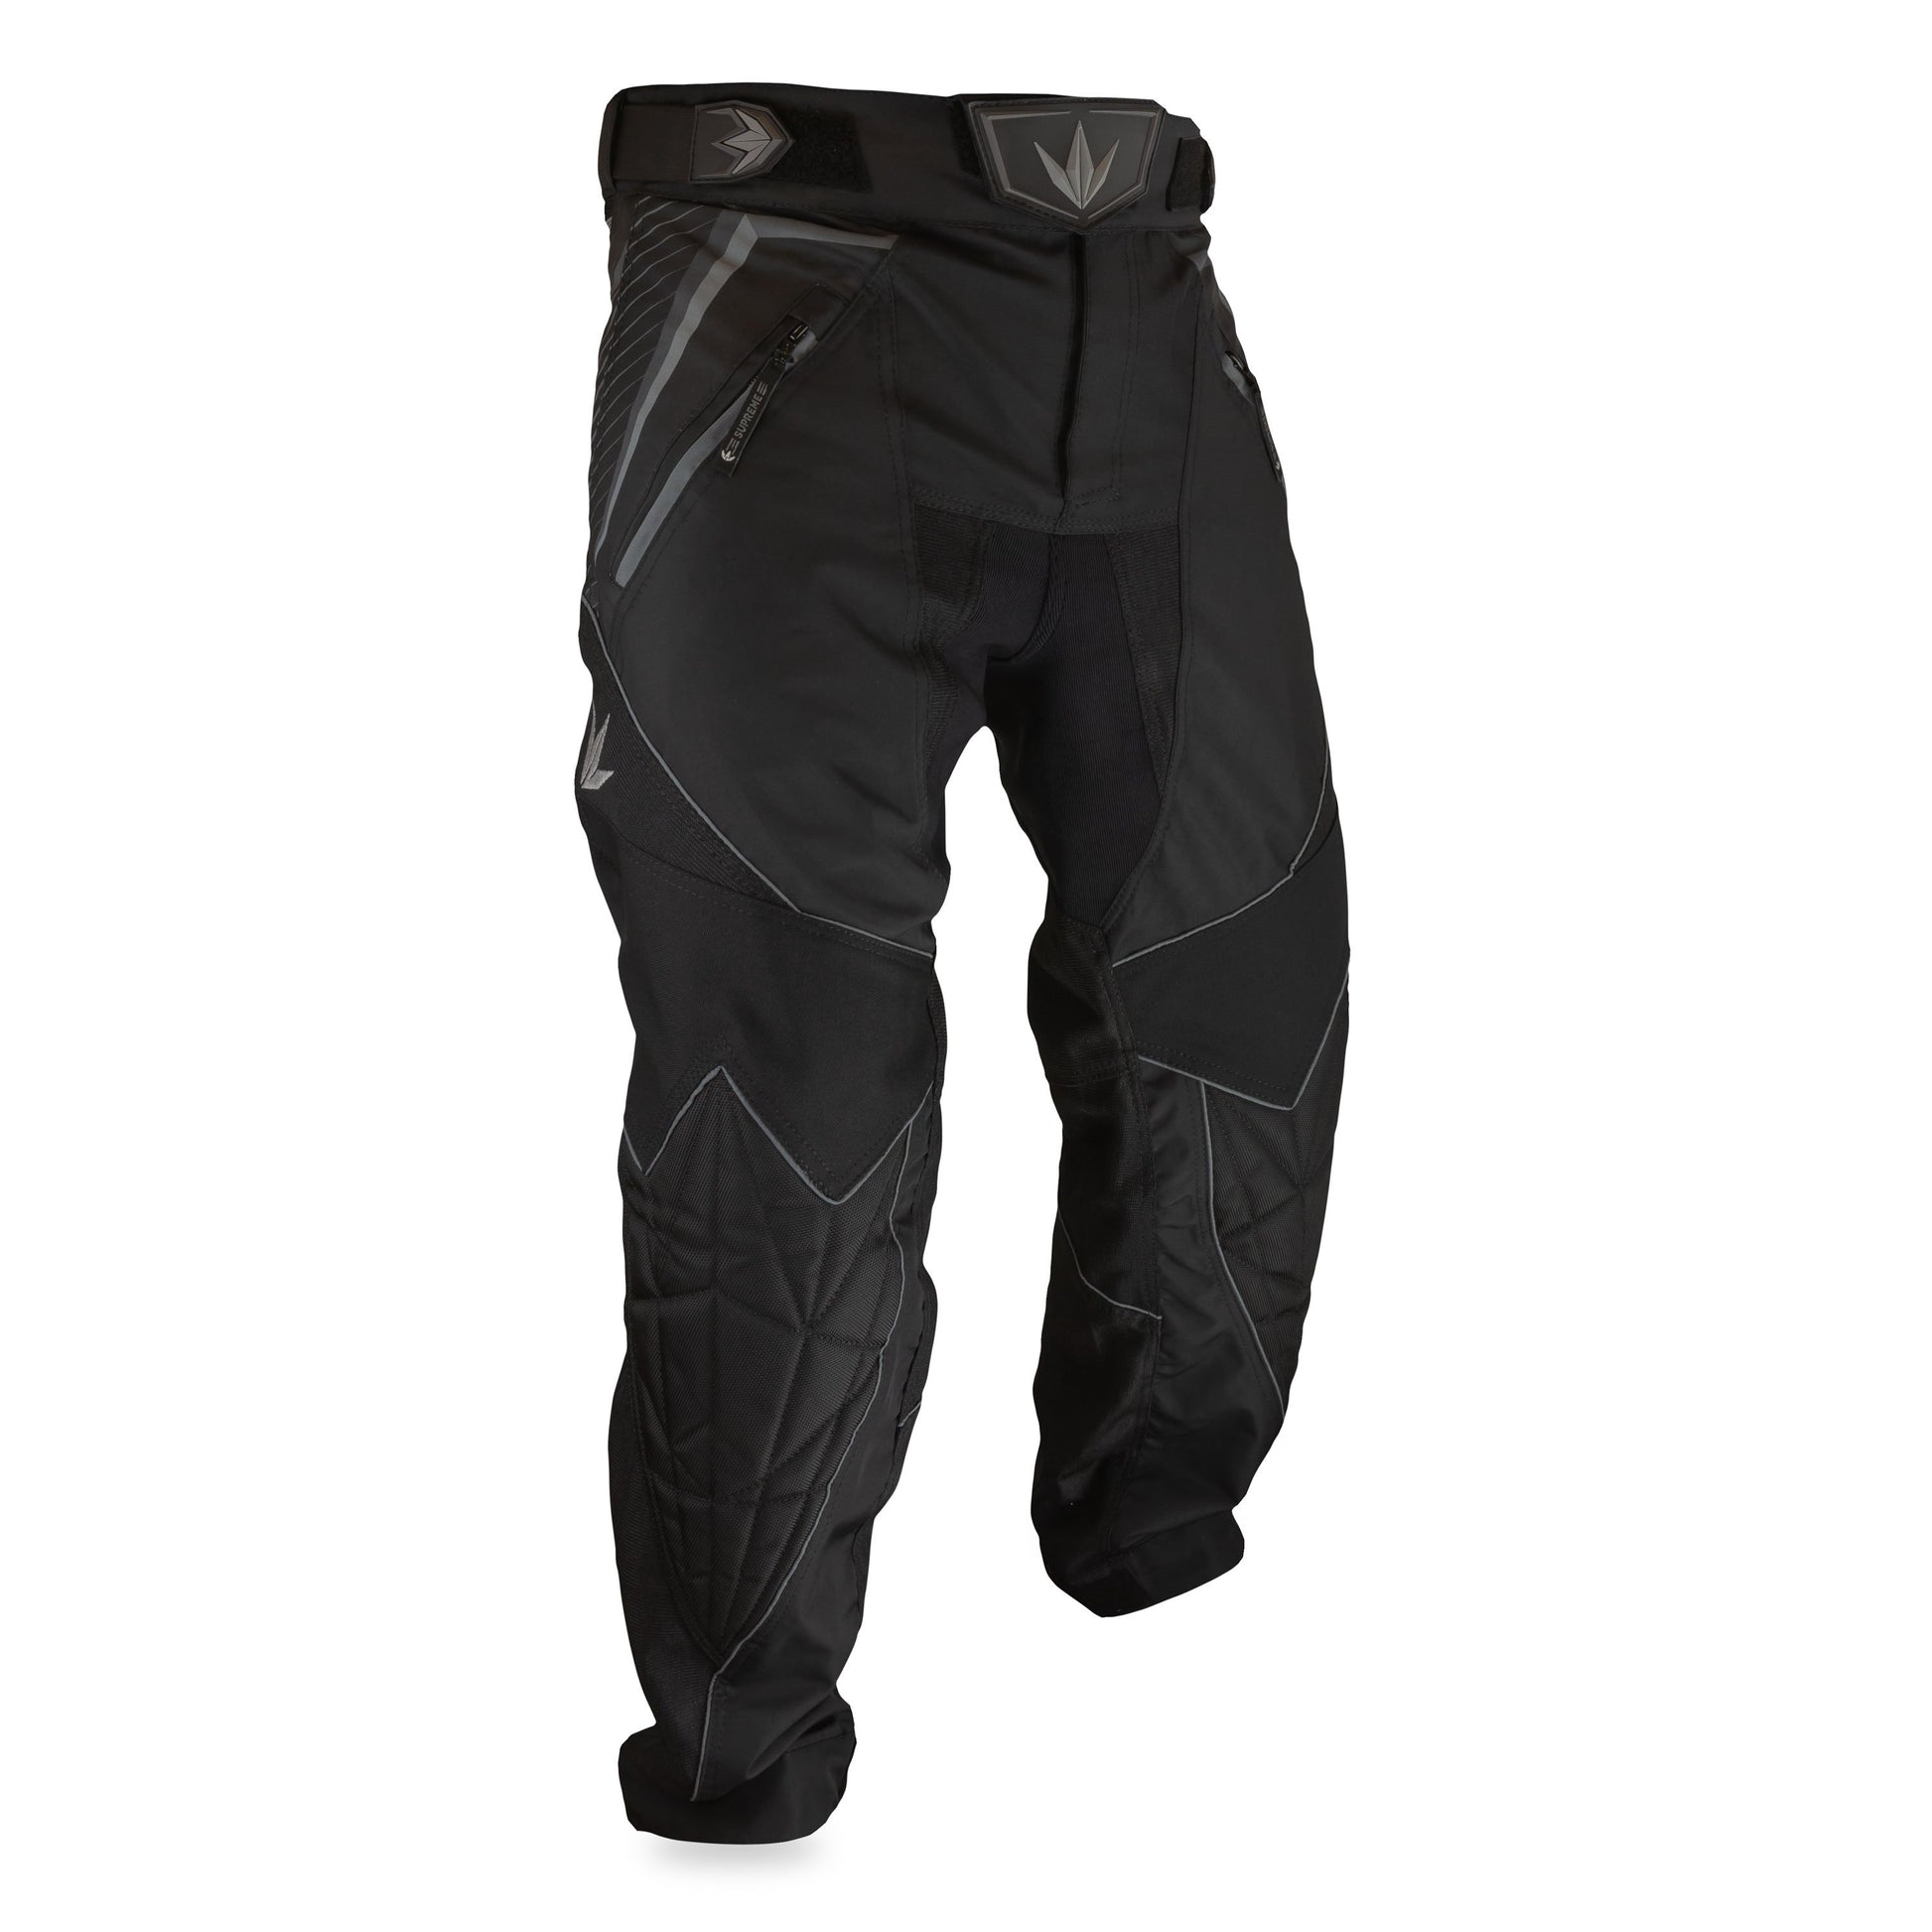 Supreme Paintball Pants  Black Bunkerkings V2 Padded Gear